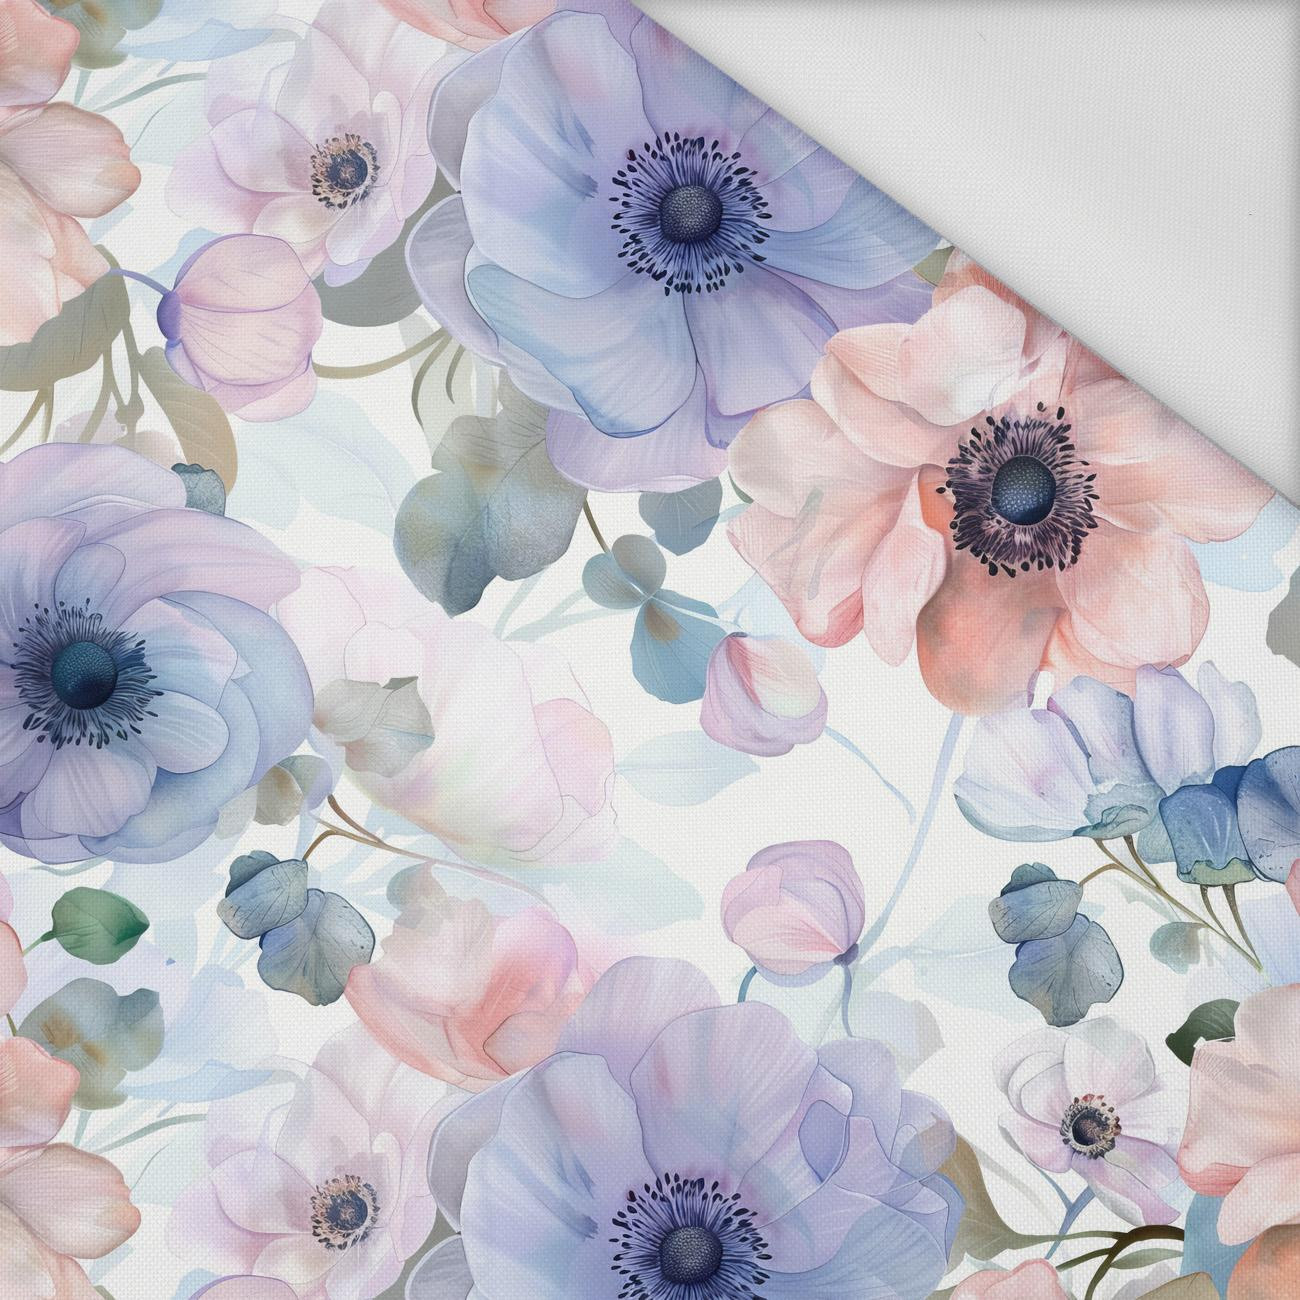 FLOWERS wz.12 - Waterproof woven fabric